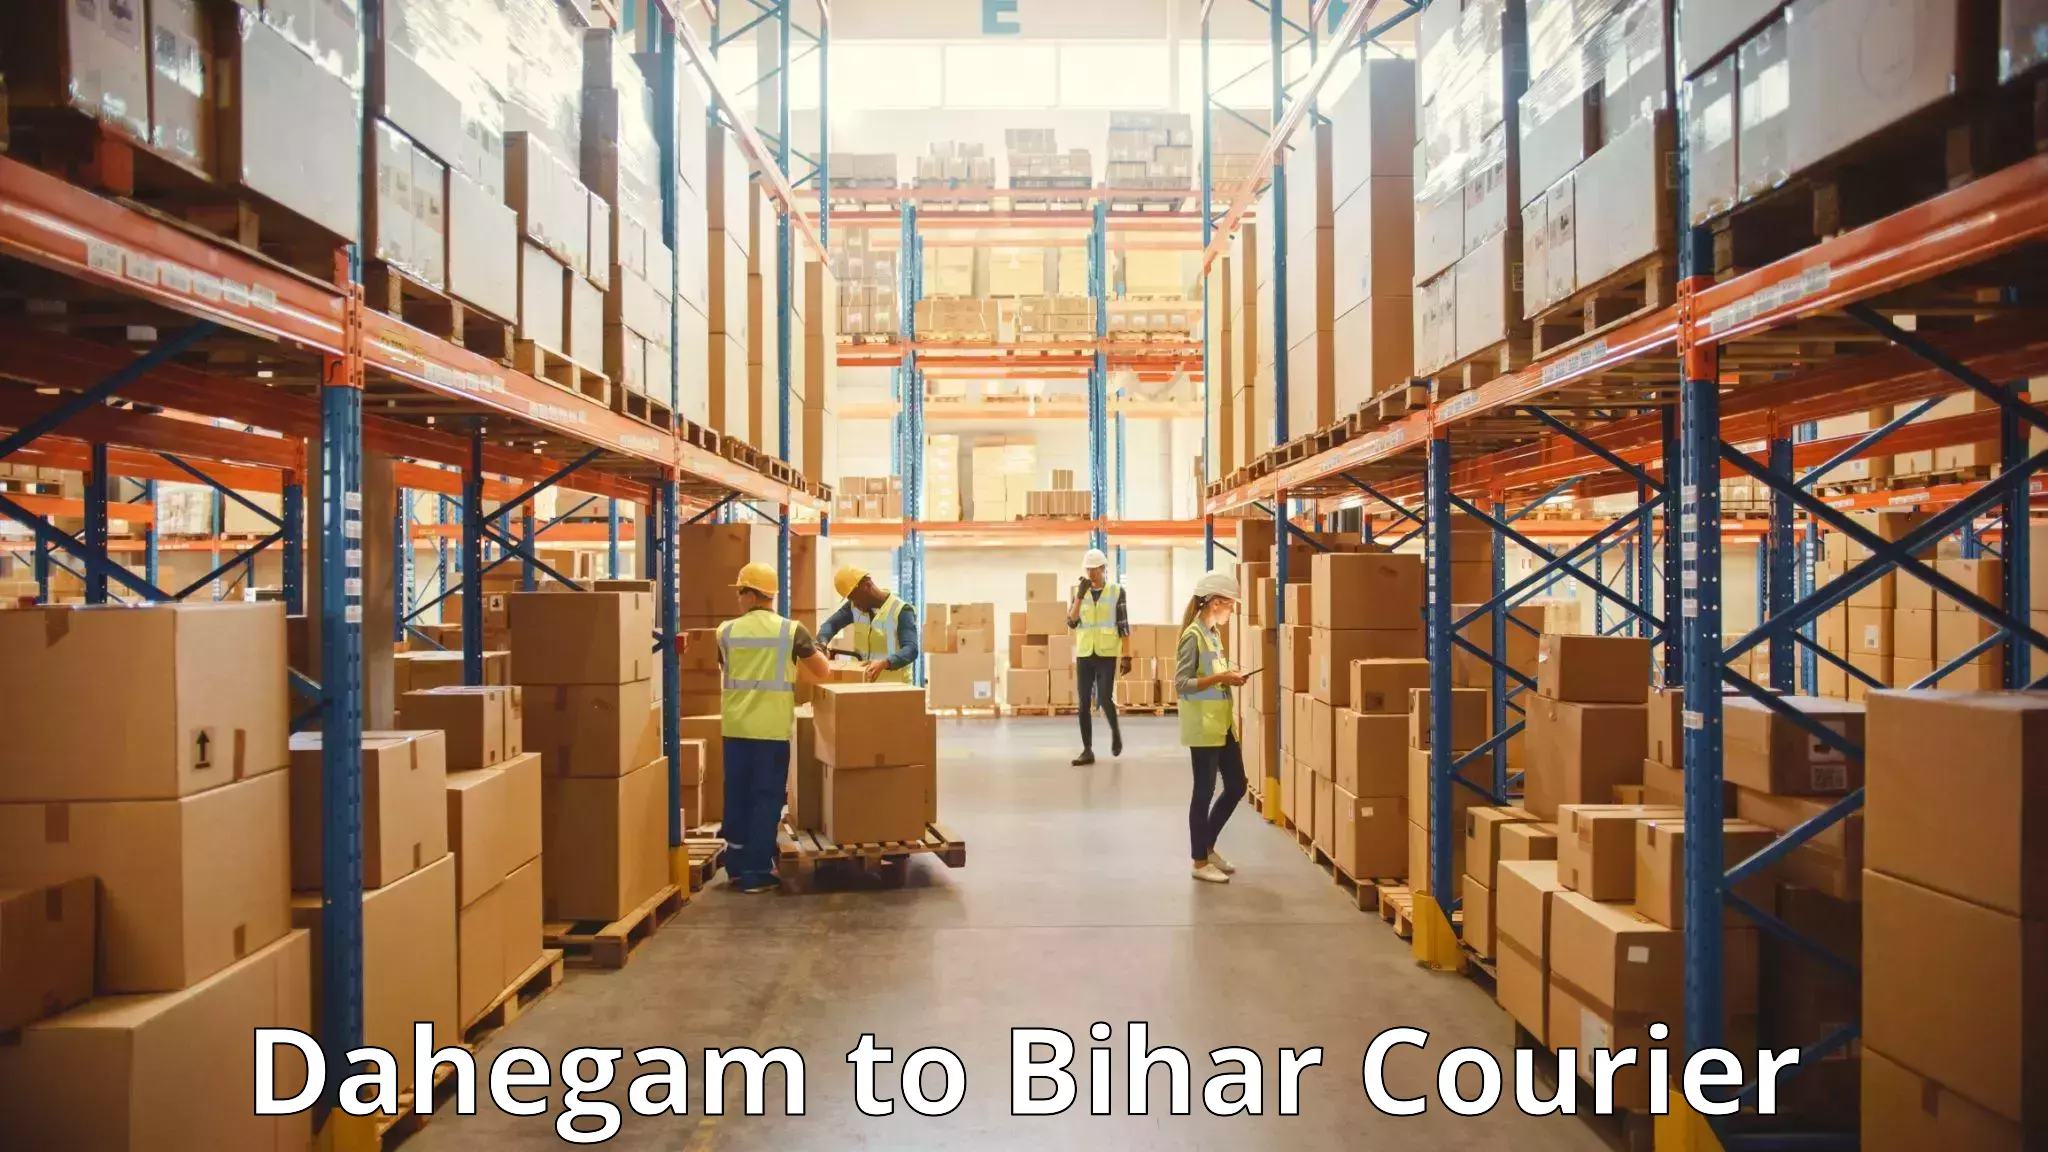 Luggage shipment specialists Dahegam to Bihar